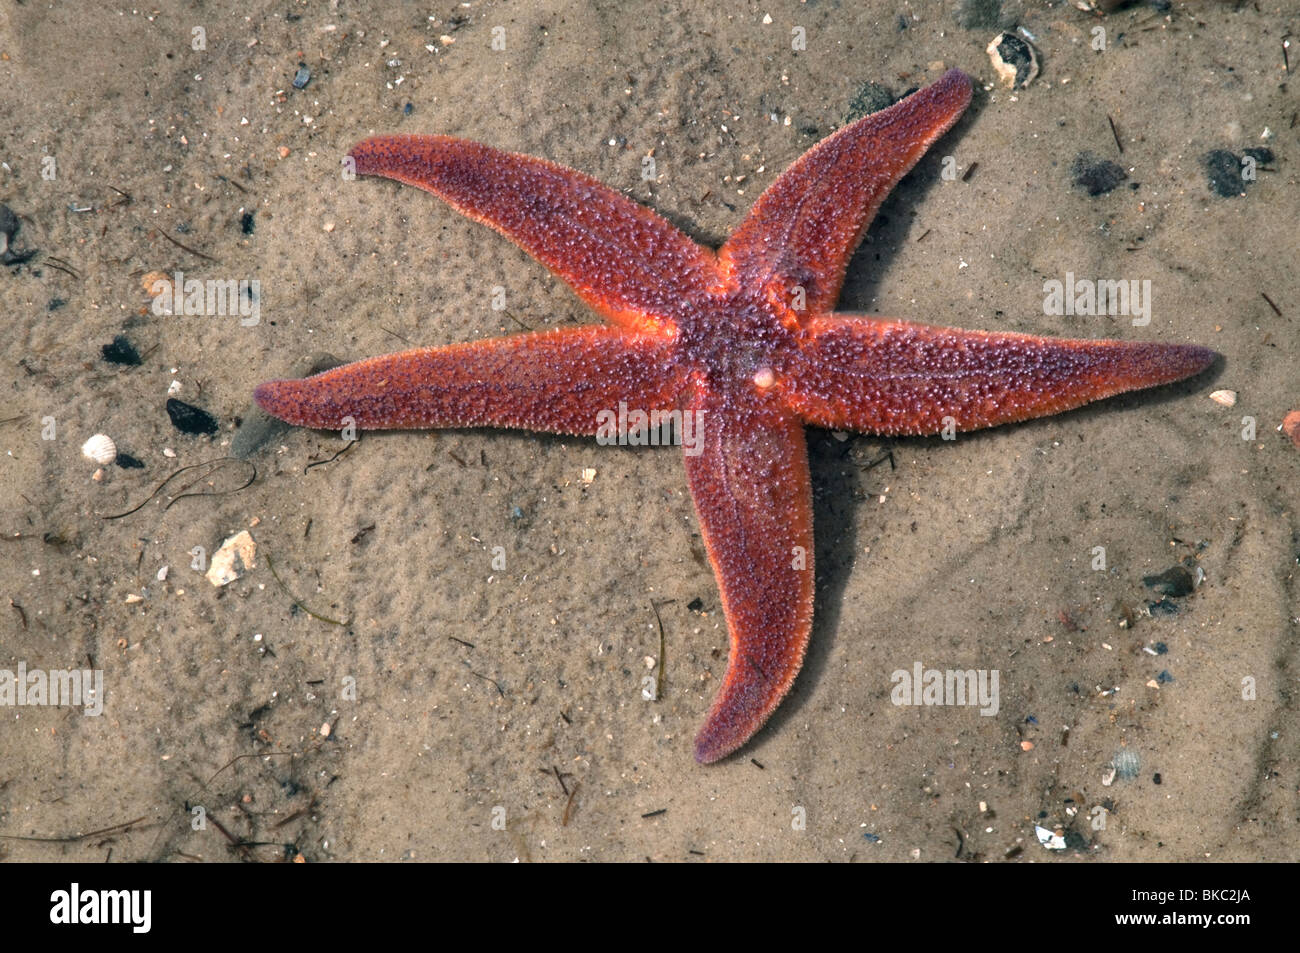 L'Étoile de mer commune, politique européenne Seastar (Asterias rubens) sur le sable. Banque D'Images